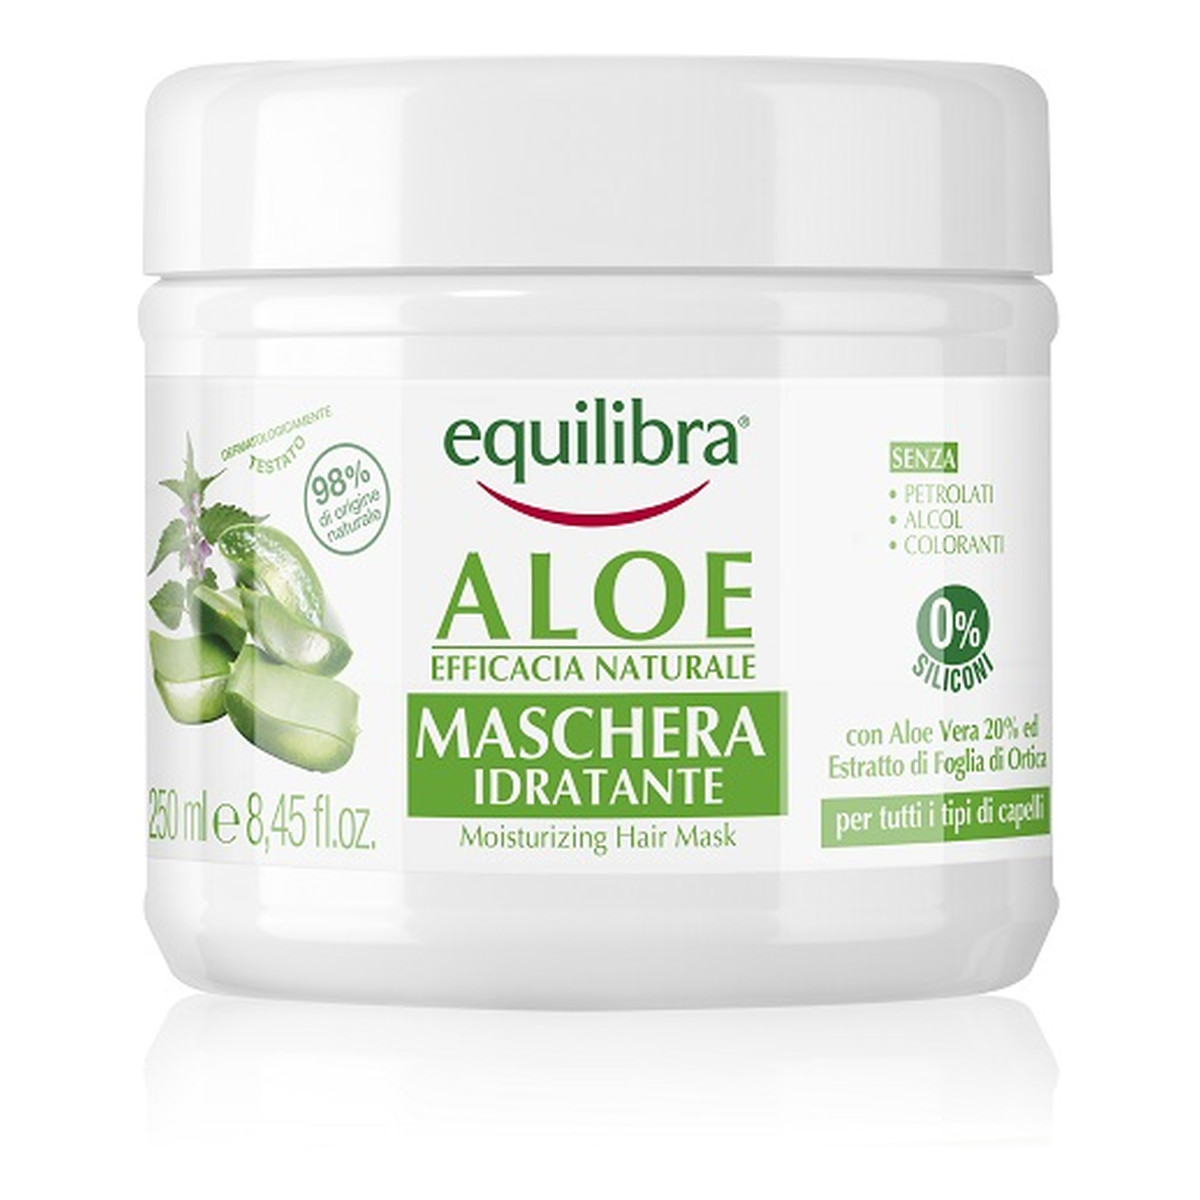 Equilibra Aloe moisturizing hair mask nawilżająca maska aloesowa do włosów 250ml